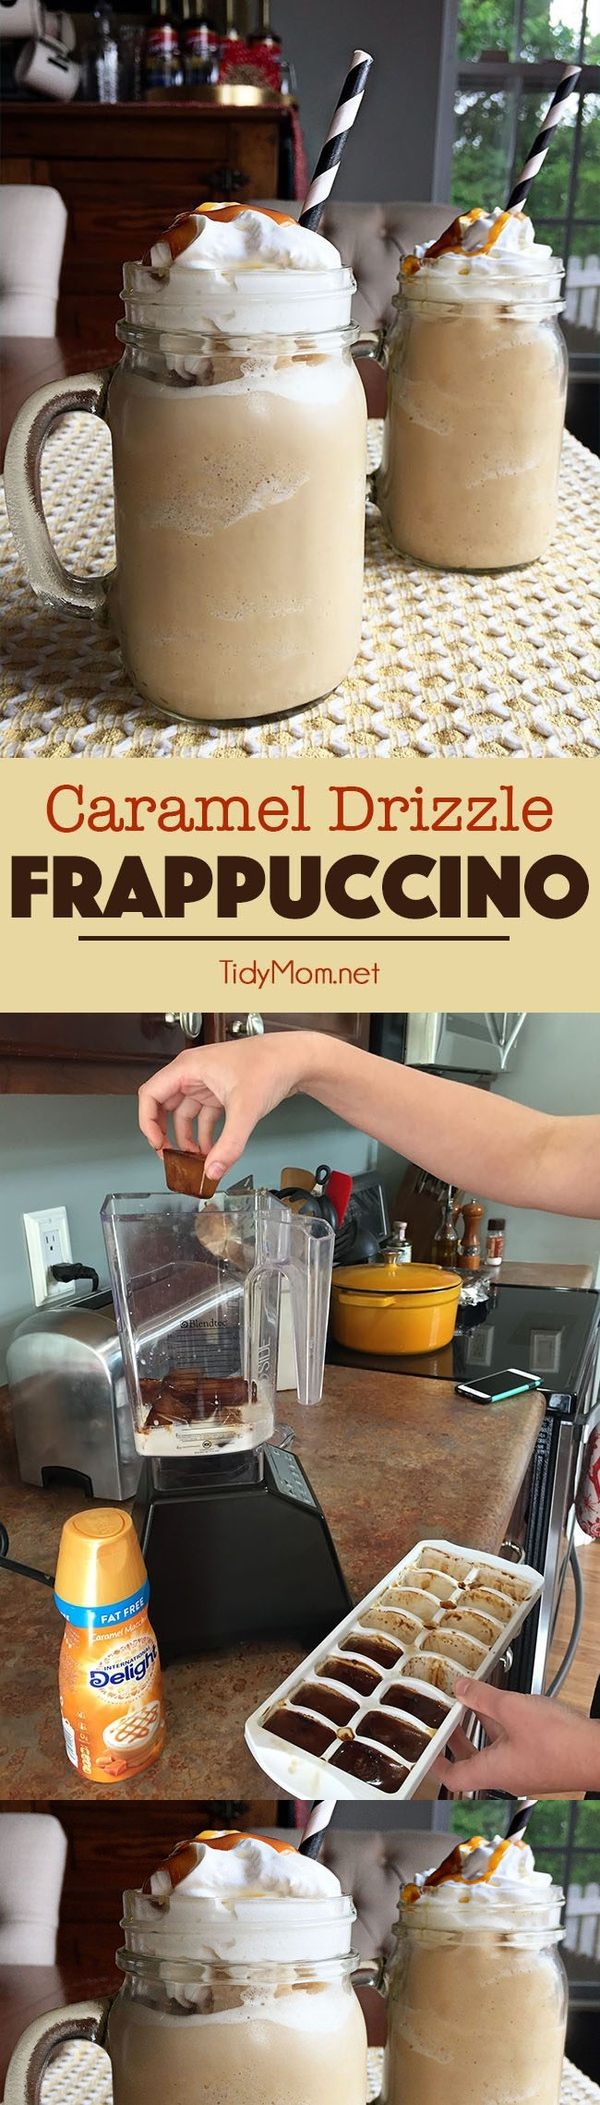 Caramel Drizzle Frappuccino